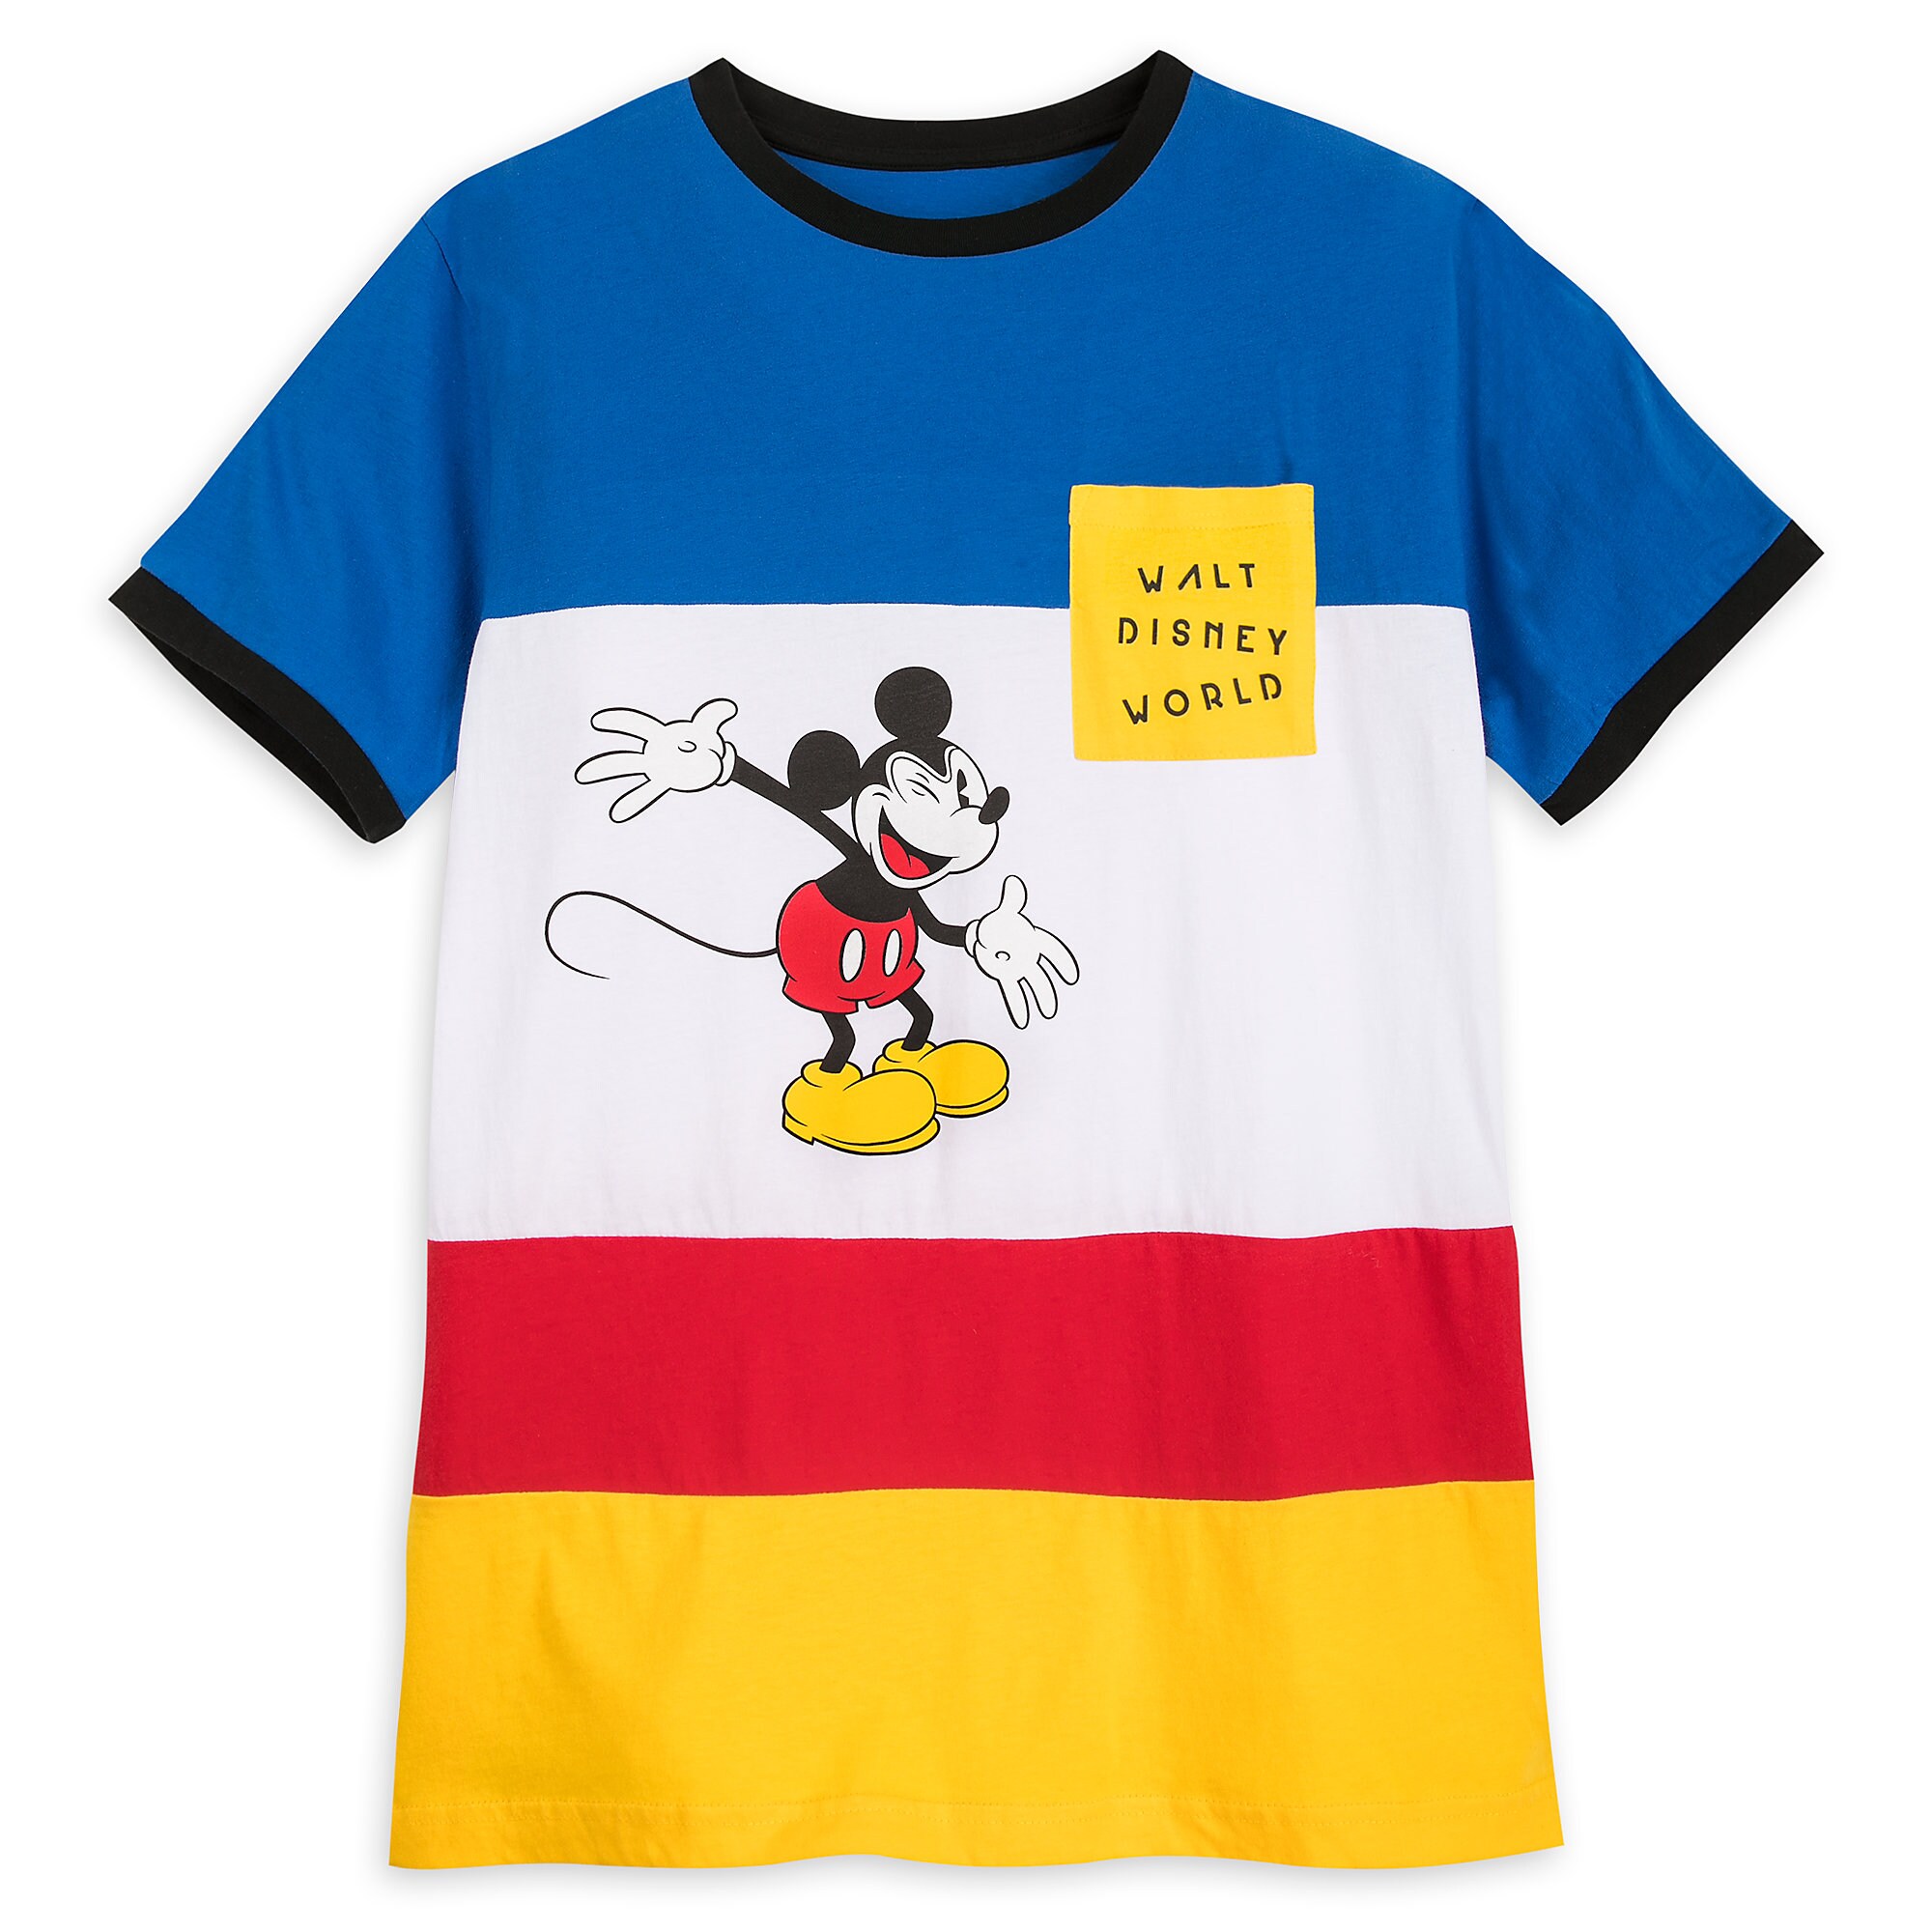 Visiter la boutique DisneyDisney Have A Good Day Mickey Mode pour Jeunesse 29x21x15 cms 